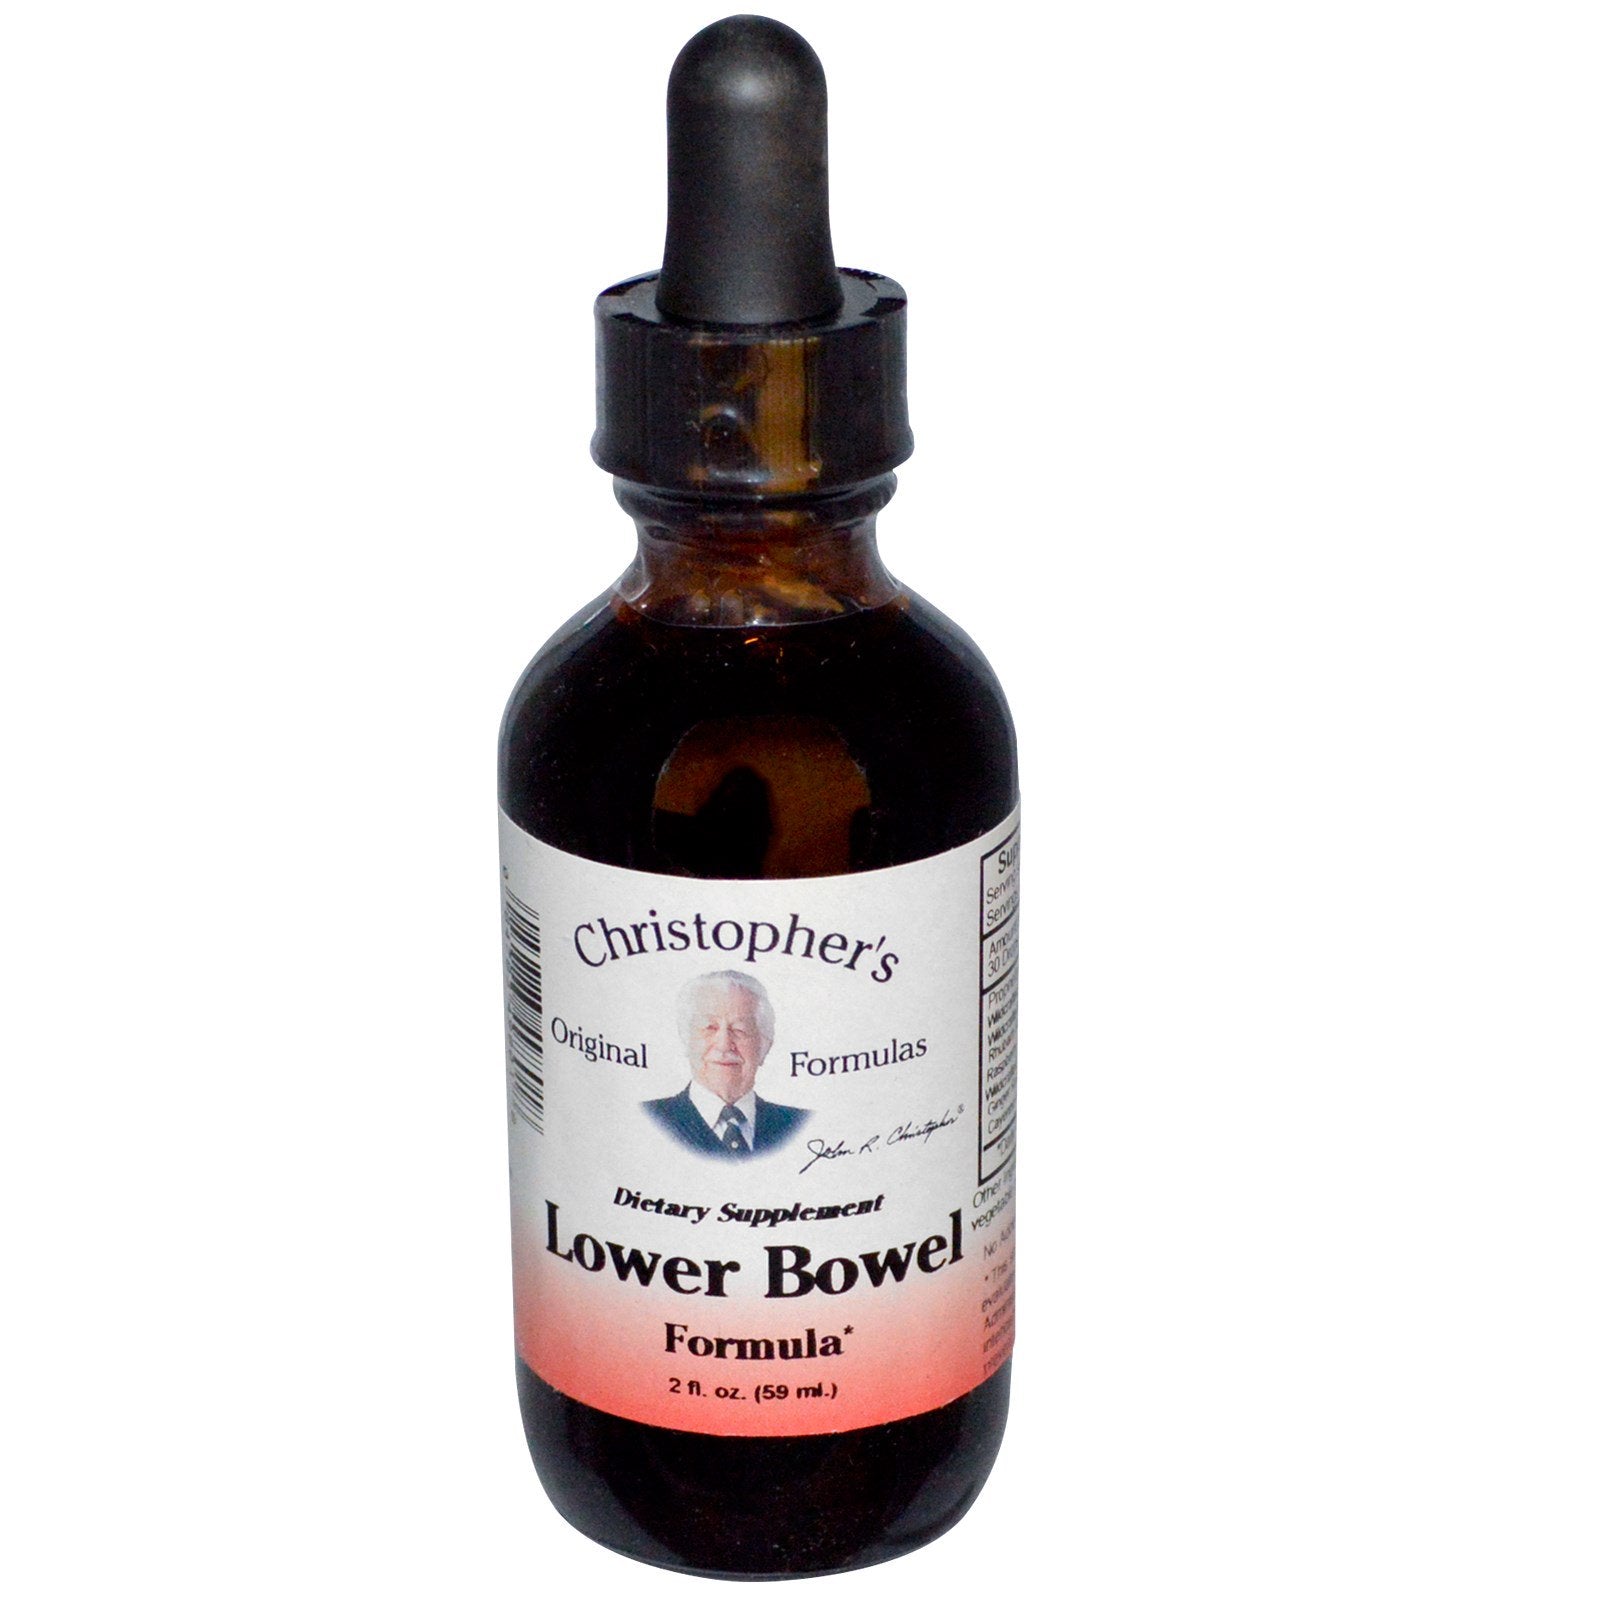 Christopher's Original Formulas, Lower Bowel Formula, 2 fl oz (59 ml)